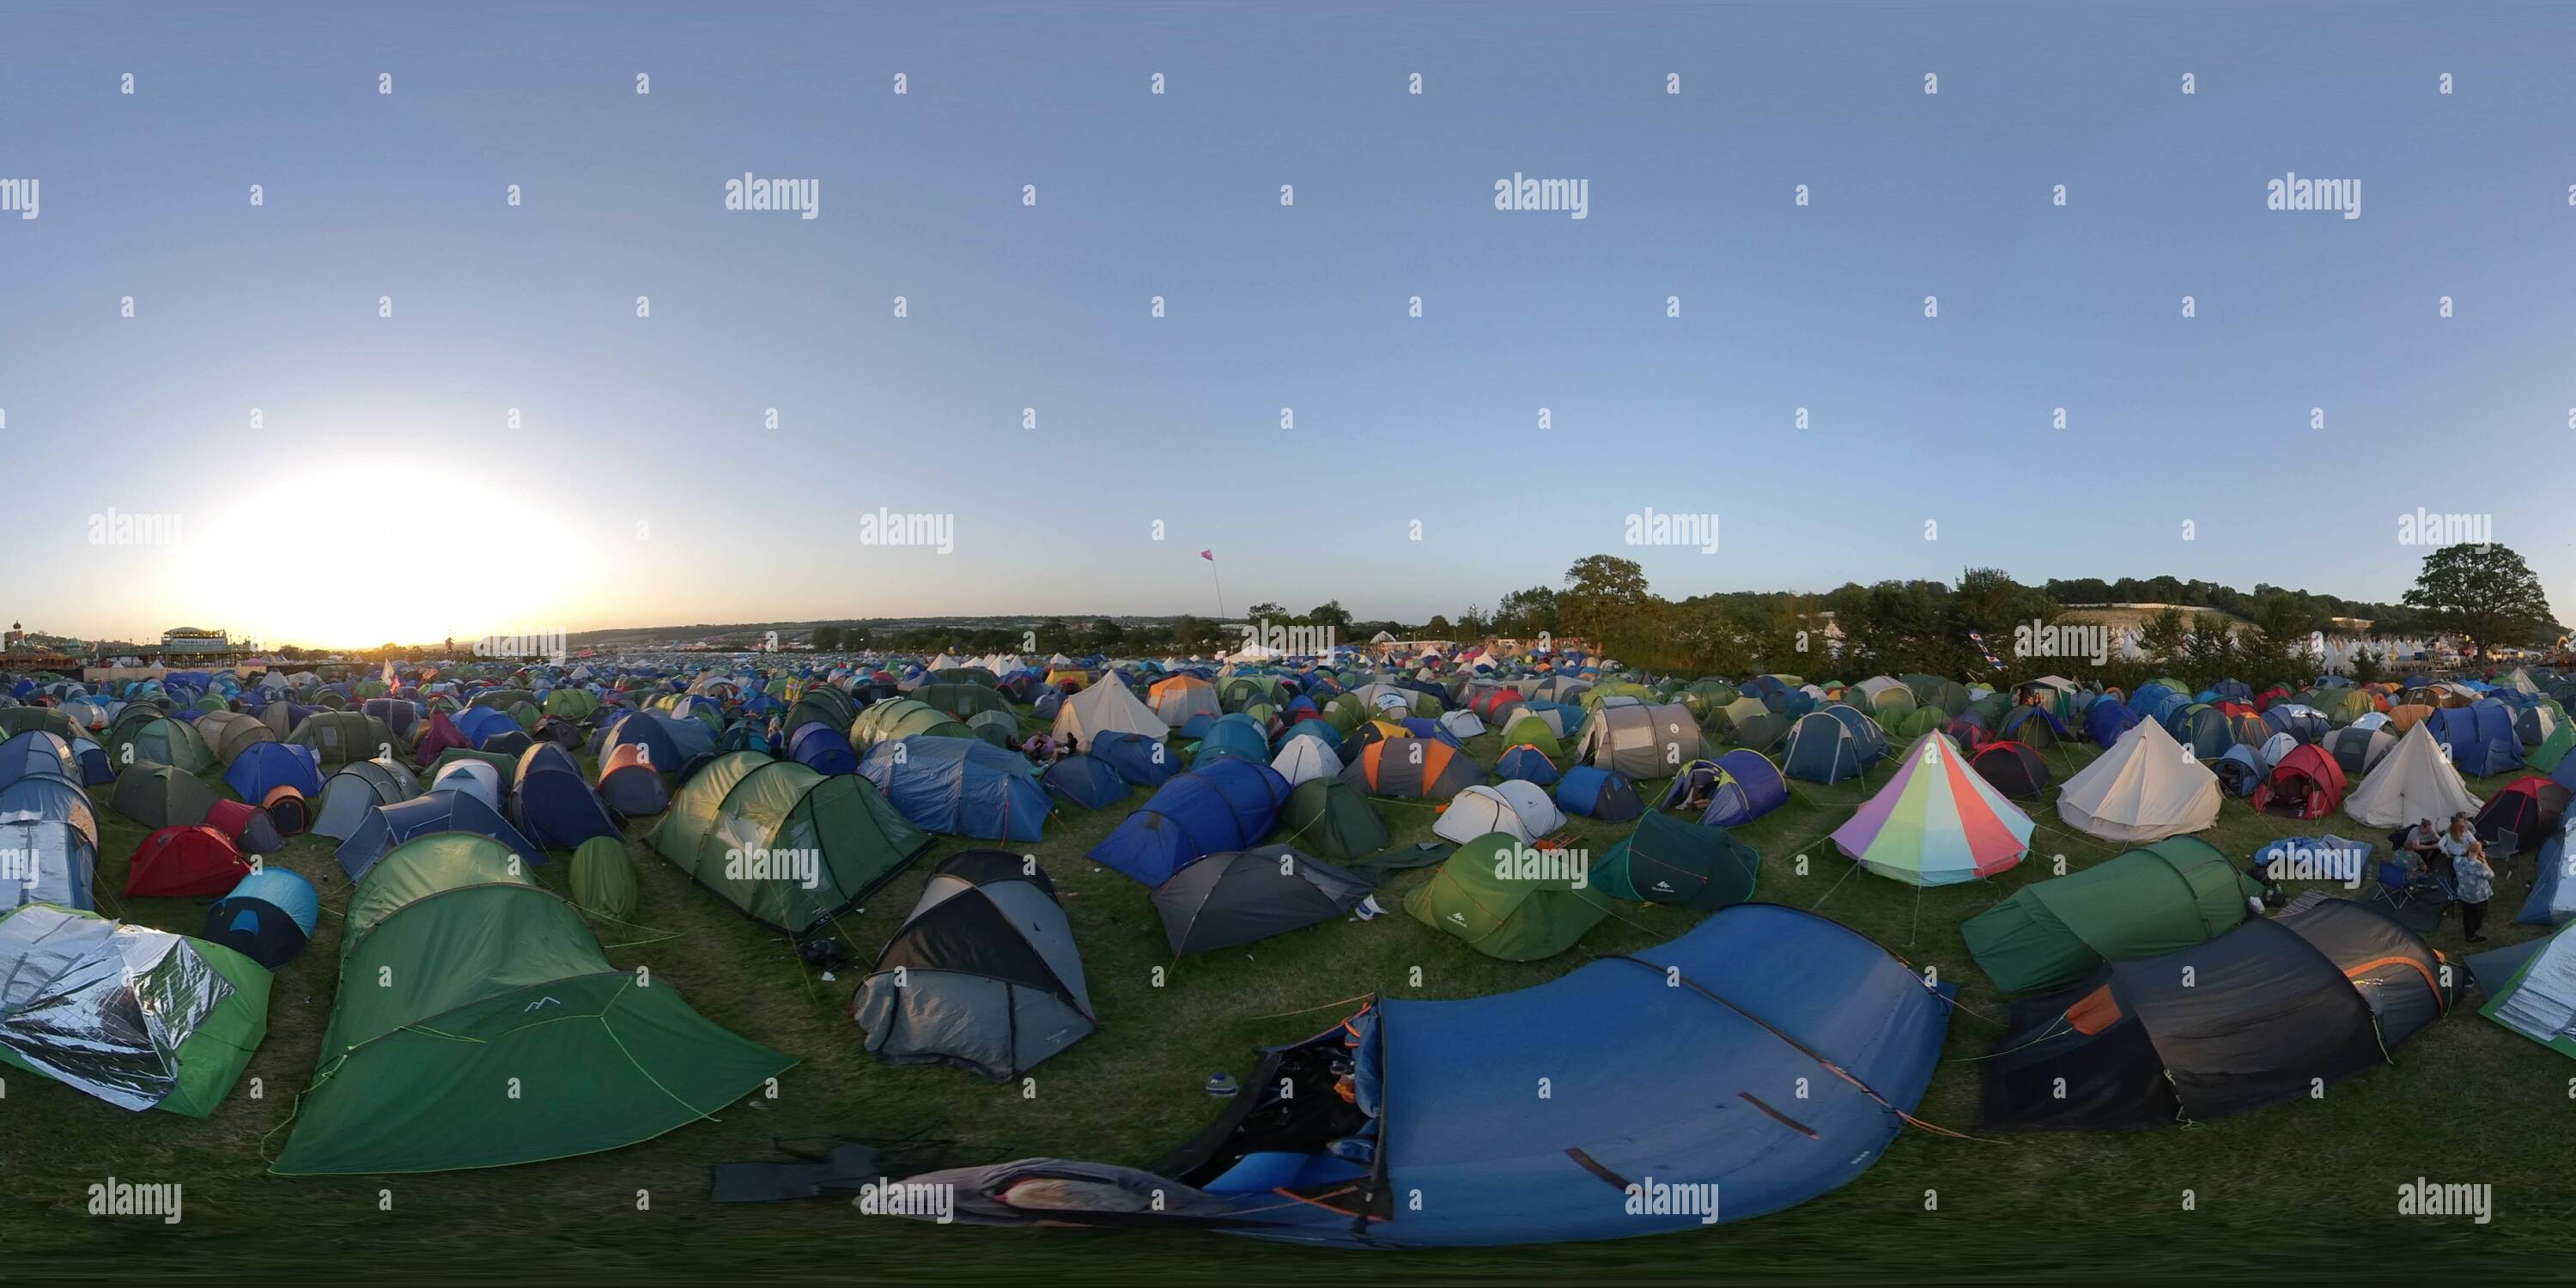 Vue panoramique à 360° de Vue à 360° des tentes à l'extrémité du Glastonbury Music Festival